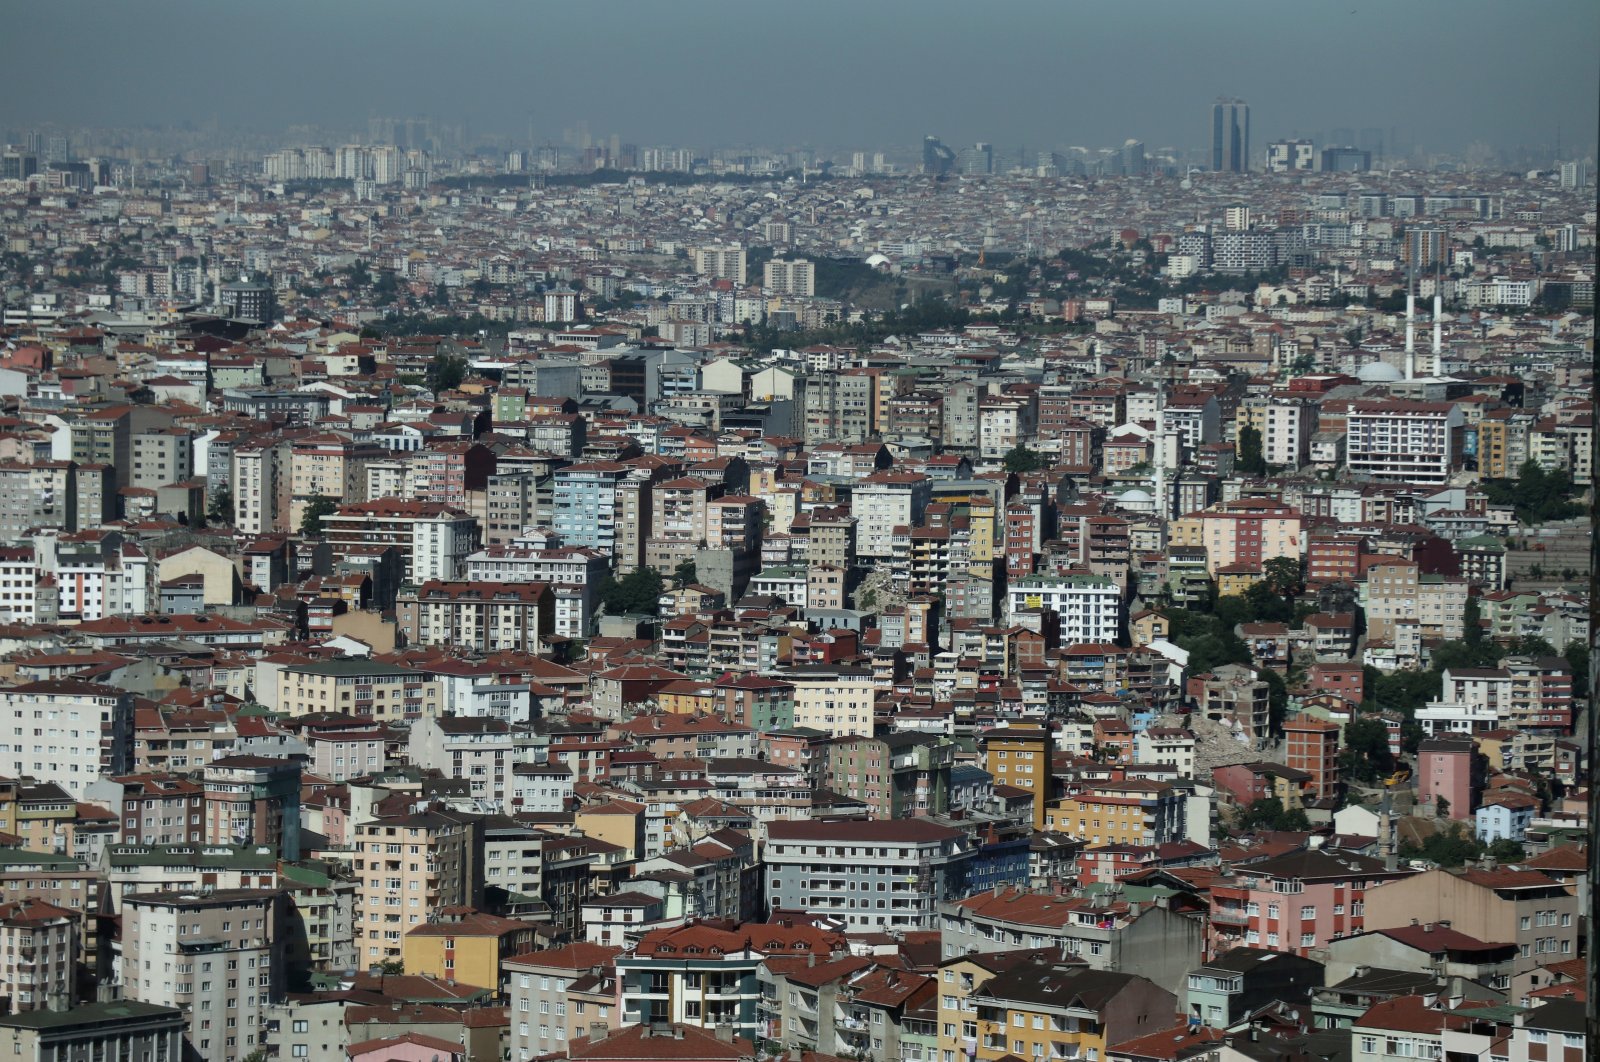 Türkiye meluncurkan drive perumahan terbesar namun membantu banyak orang menjadi pemilik rumah